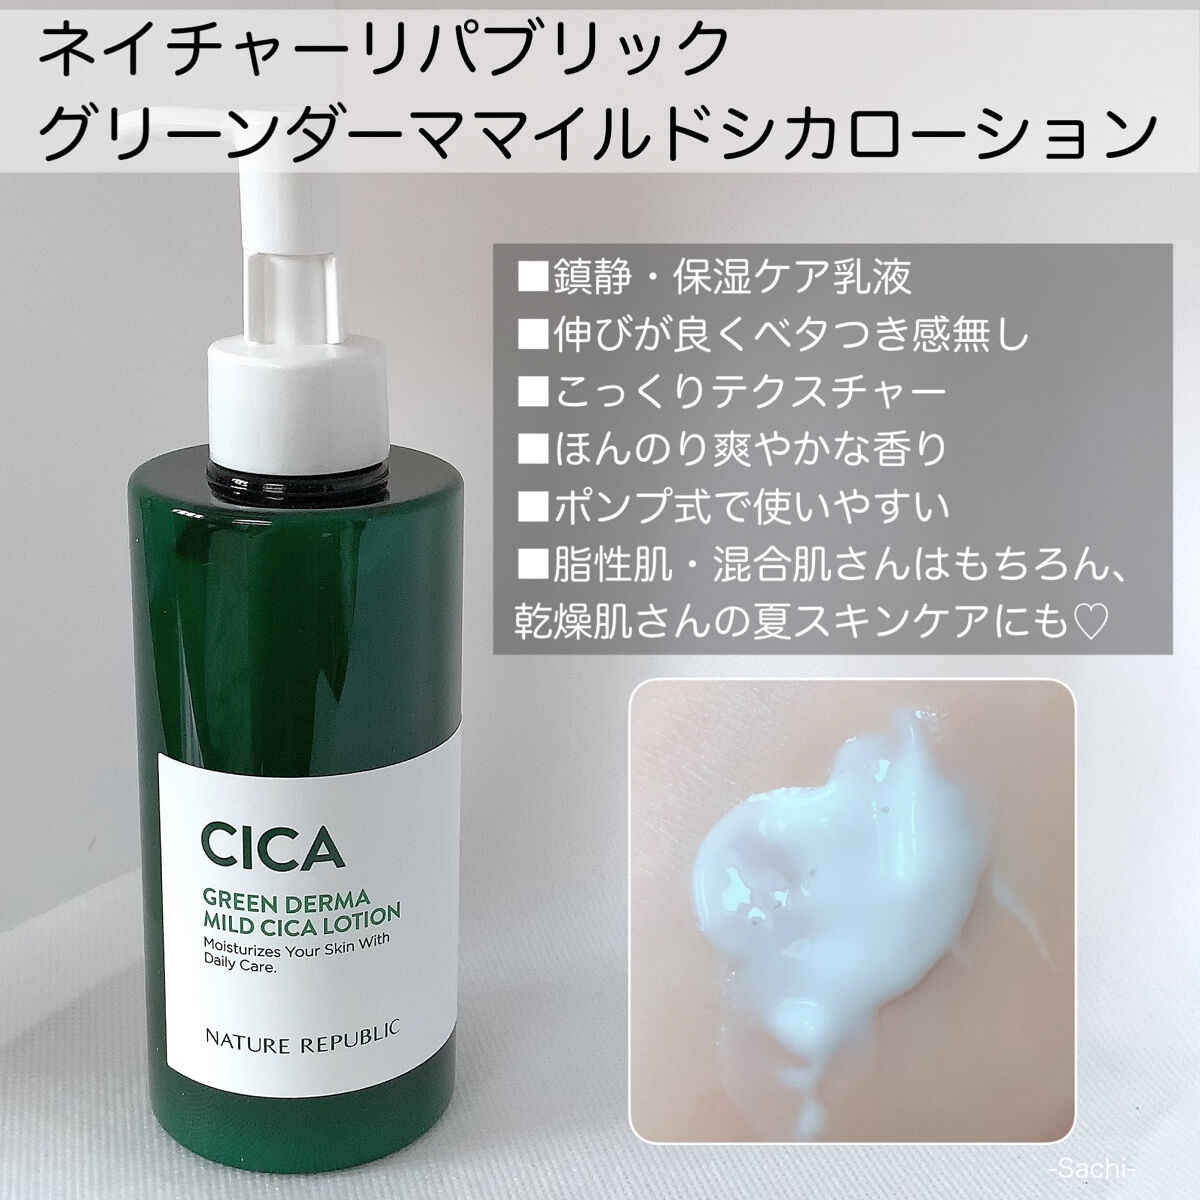 ネイチャーリパブリック GREEN DERMA MILD CICA CREAM - 基礎化粧品